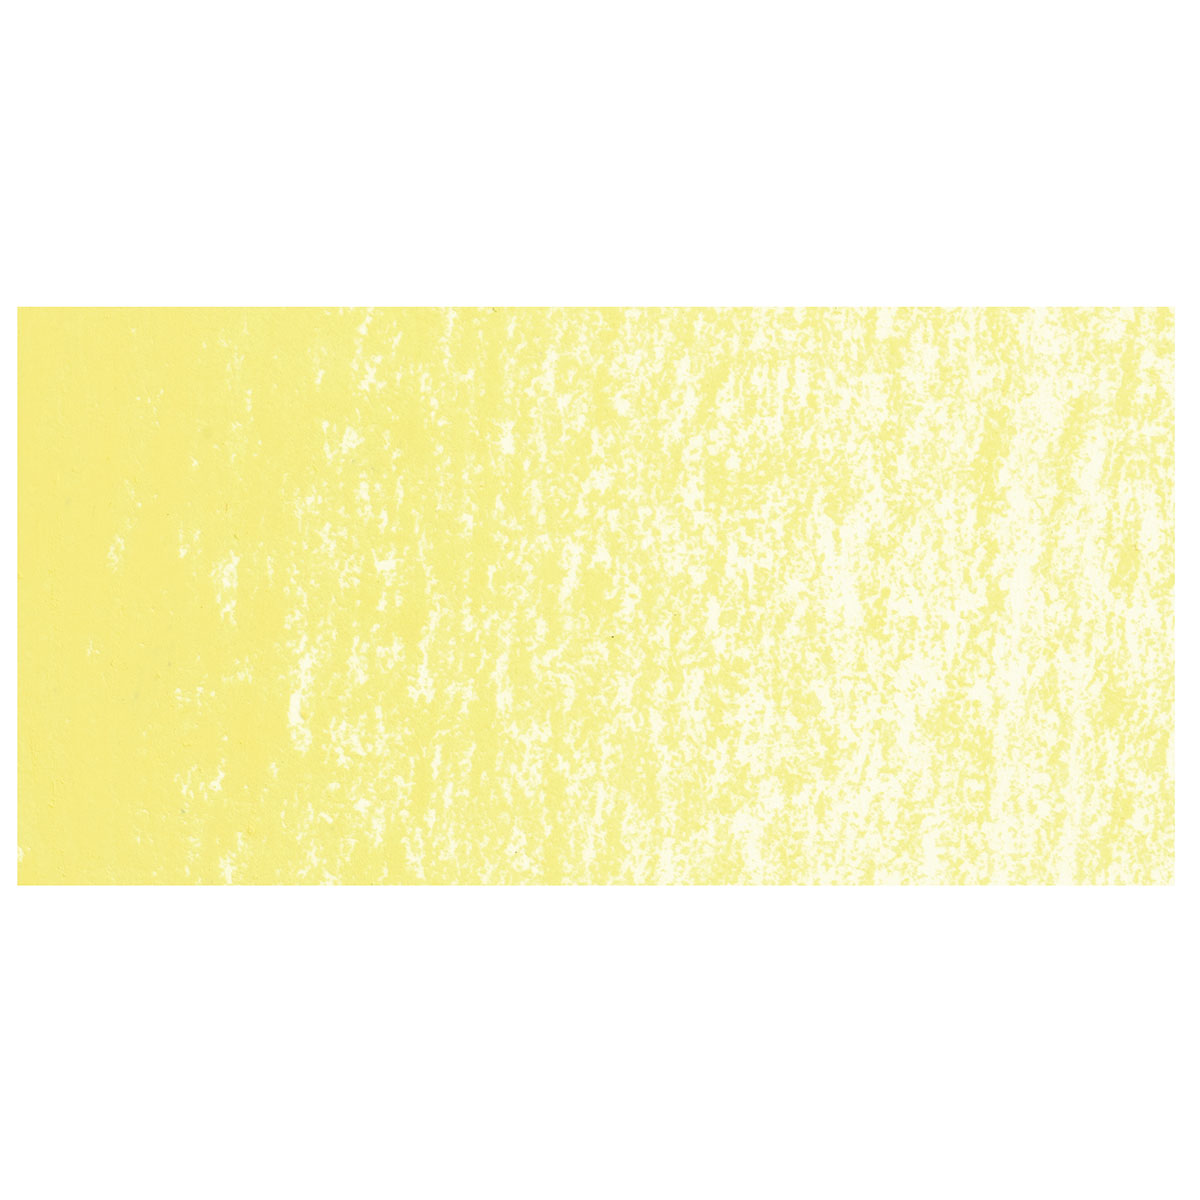 Caran D'Ache Neocolors II Chart - Full Colour Chart - Print and Colour –  LeanneLandArt